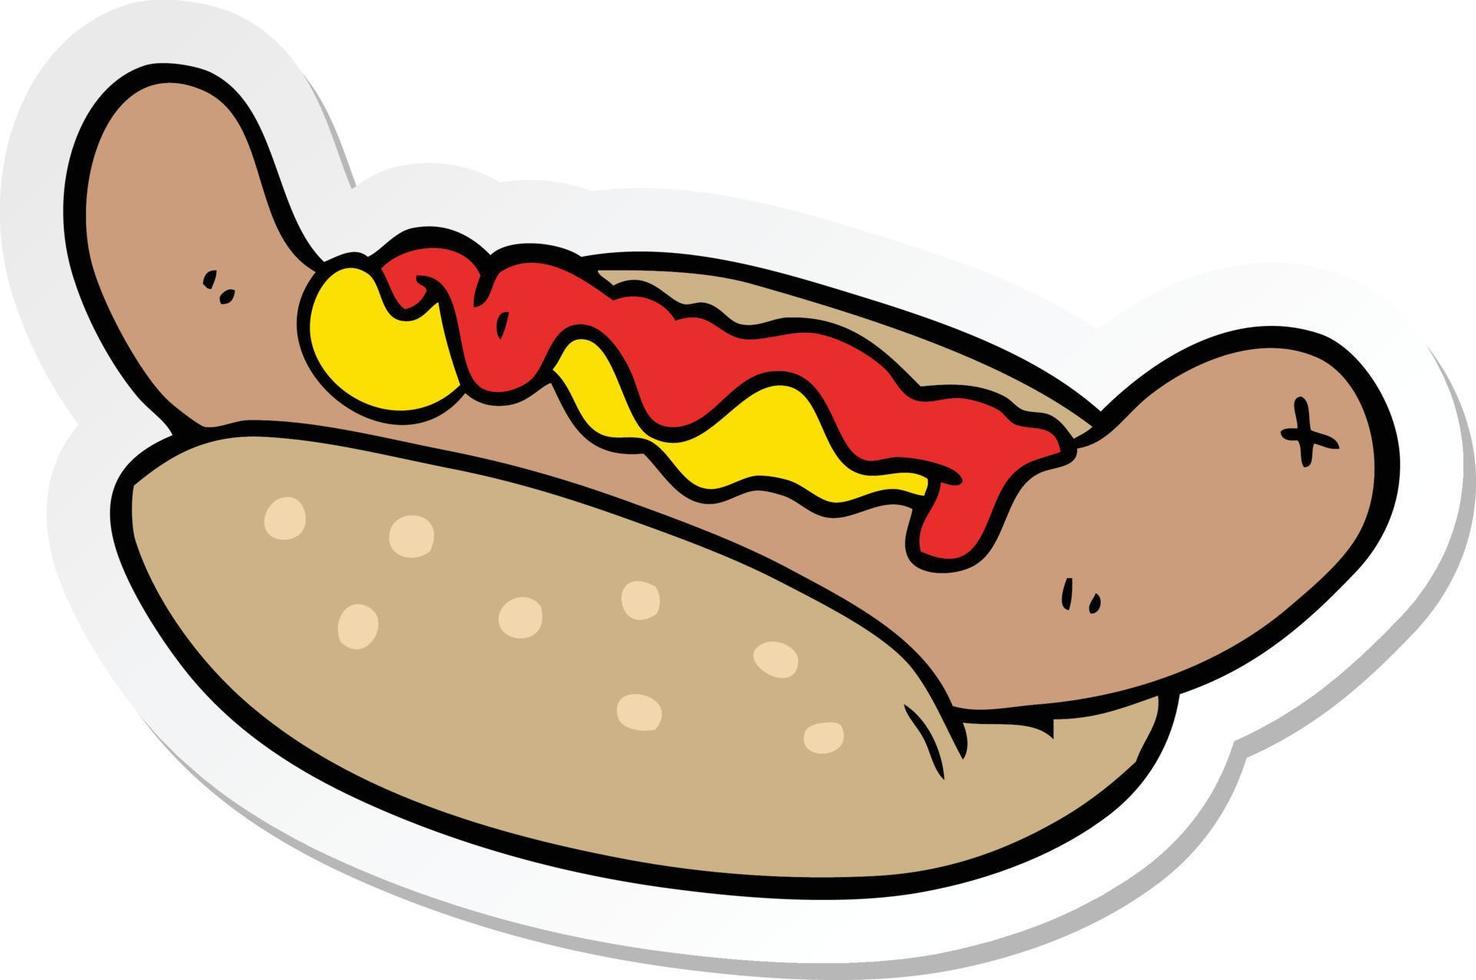 sticker of a cartoon hot dog vector